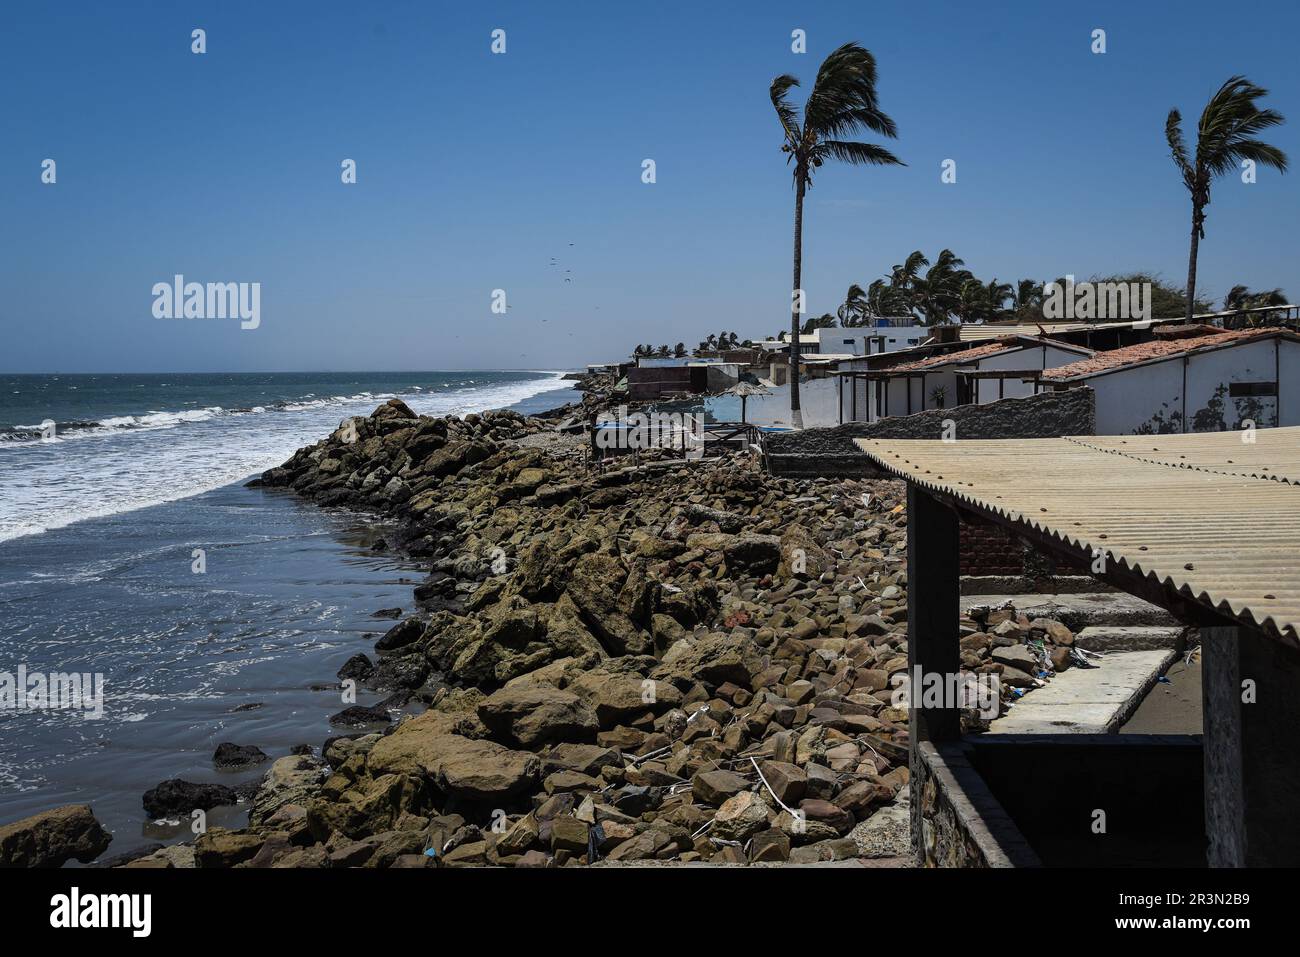 Nicolas Remene / Le Pictorium - El Nino Phänomen an der Nordküste Perus - 28/10/2018 - Peru / Piura / Colan - Paita - die Häuser von La Stockfoto